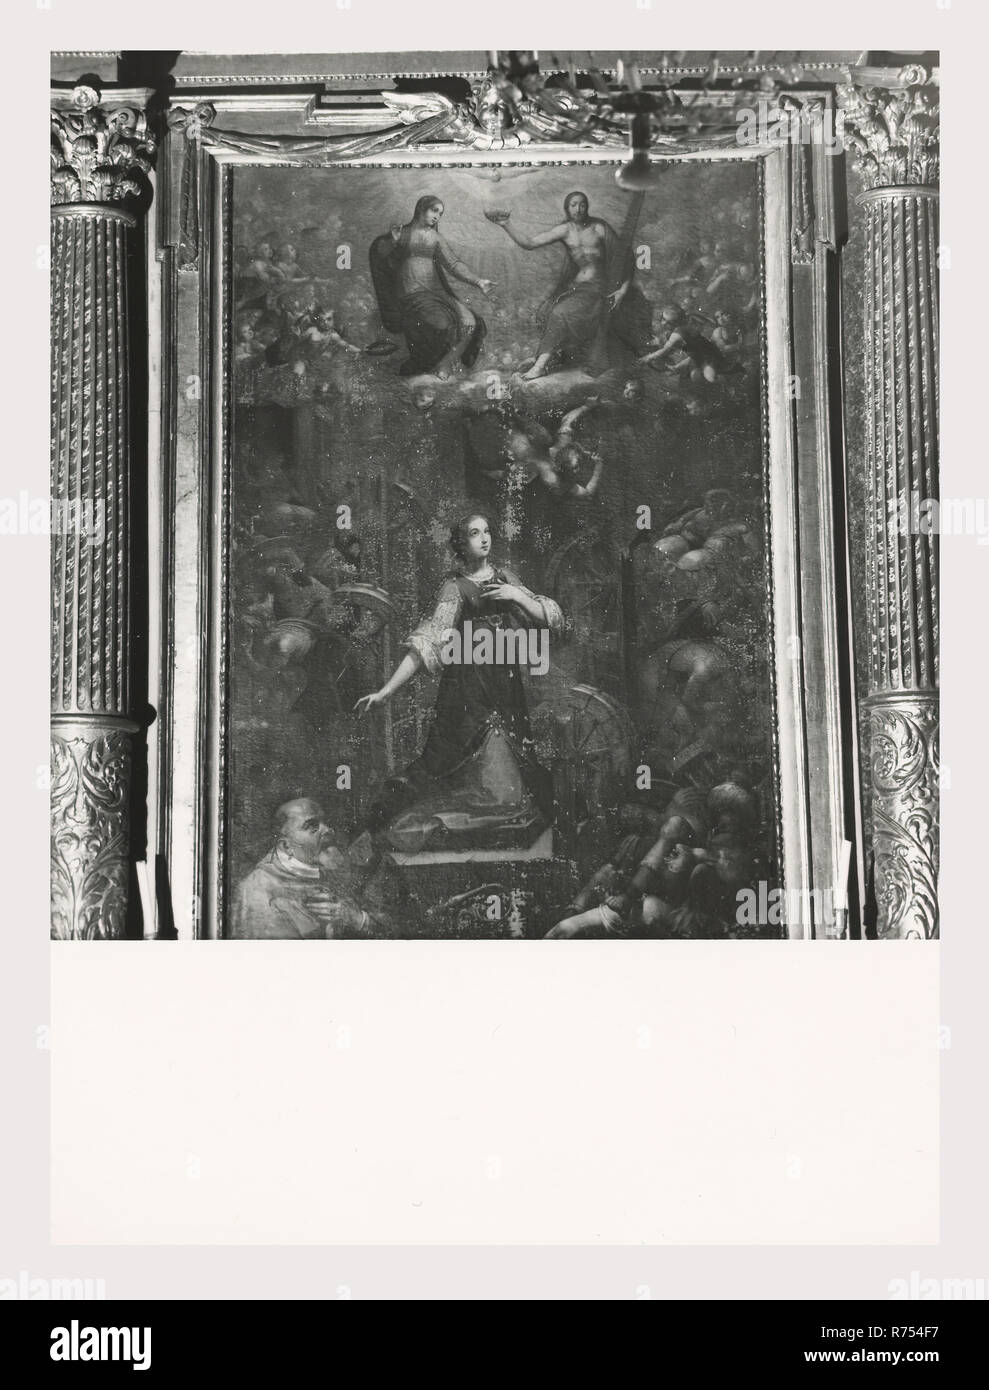 Umbrien Perugia Spello S. Lorenzo, das ist mein Italien, die italienische Land des Visual History, S. Lorenzo 1120 steht auf dem Gelände der ehemaligen S. Ercolano. Außenansichten der Portal aus dem 13. Jahrhundert und die Fassade im Jahr 1540 umgebaut. Blick auf den Innenbereich konzentriert sich auf die Malerei und Skulptur vom 15. bis 18. Jahrhunderts Marmor Intarsien Taufbecken 1607 Hauptaltar Baldachin eine Nachahmung des in St. Peter, Rom Holz Intarsien choirstalls aus Holz und Brust in der Sakristei mit dem intarsiaed dar, Mose, Noah und Zaccariah hölzerne Kanzel mit Reliefs des Martyriums des S. Lorenzo Fresken in Th Stockfoto